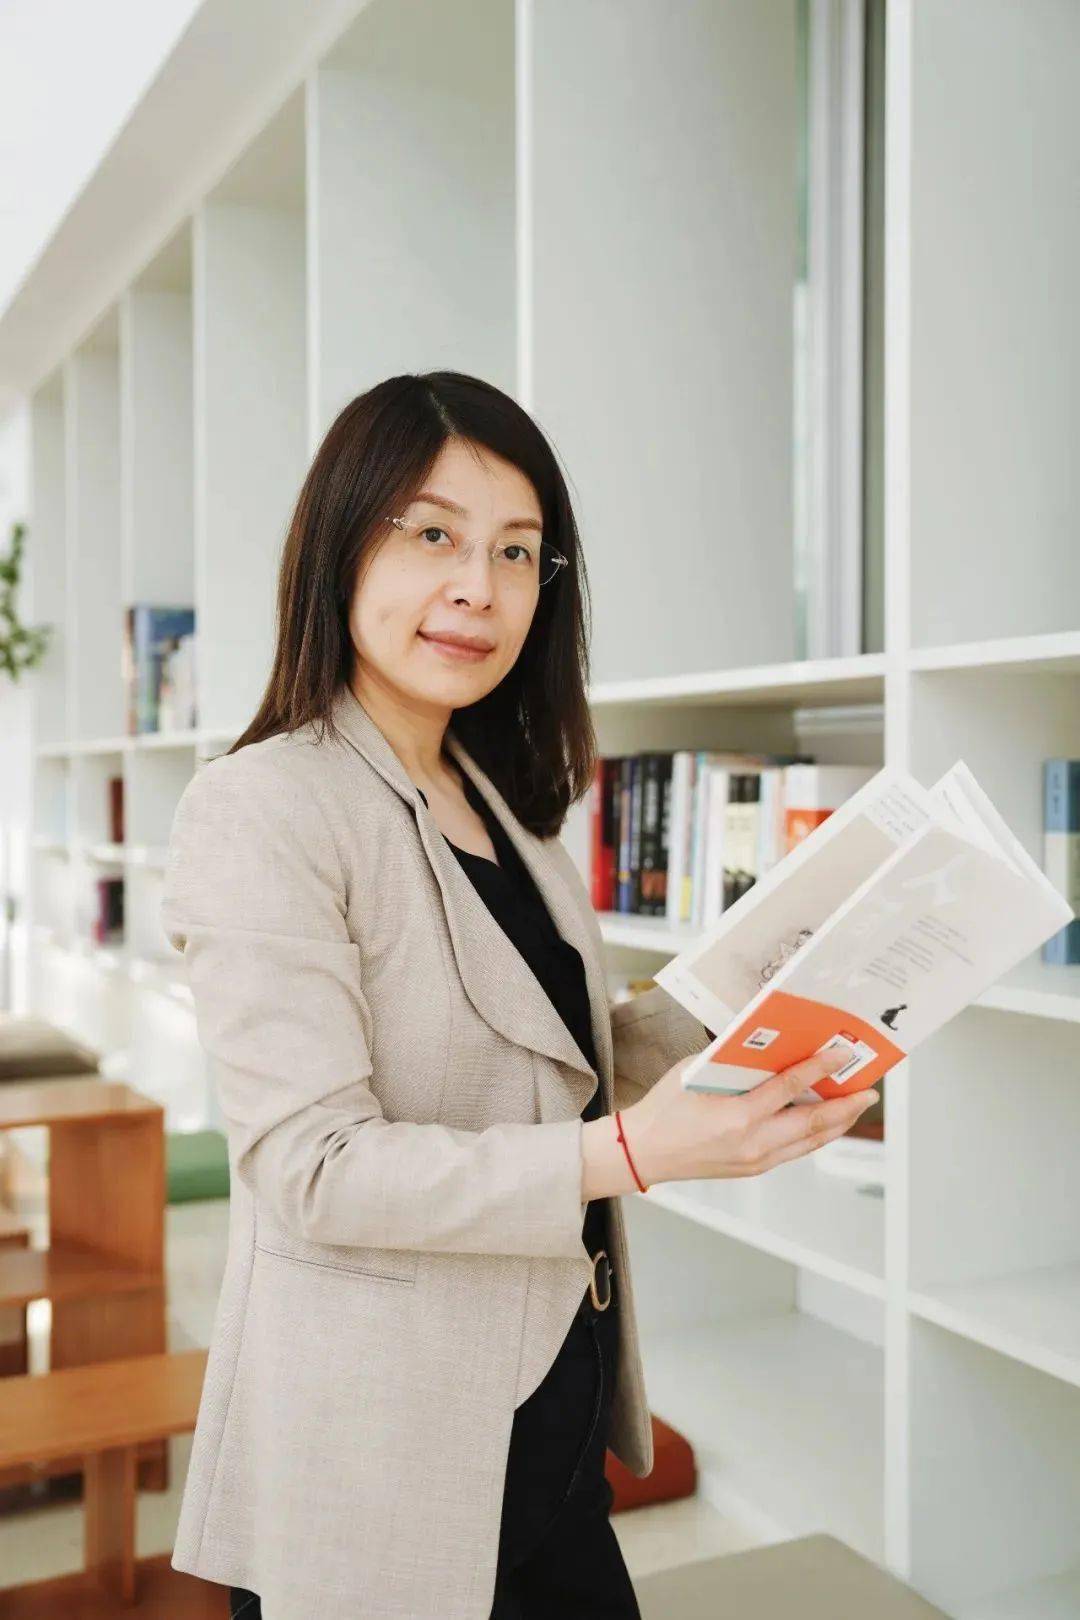 张燕咏教授回国后选择了来到科大工作,而她的先生则是在上海,孩子也在